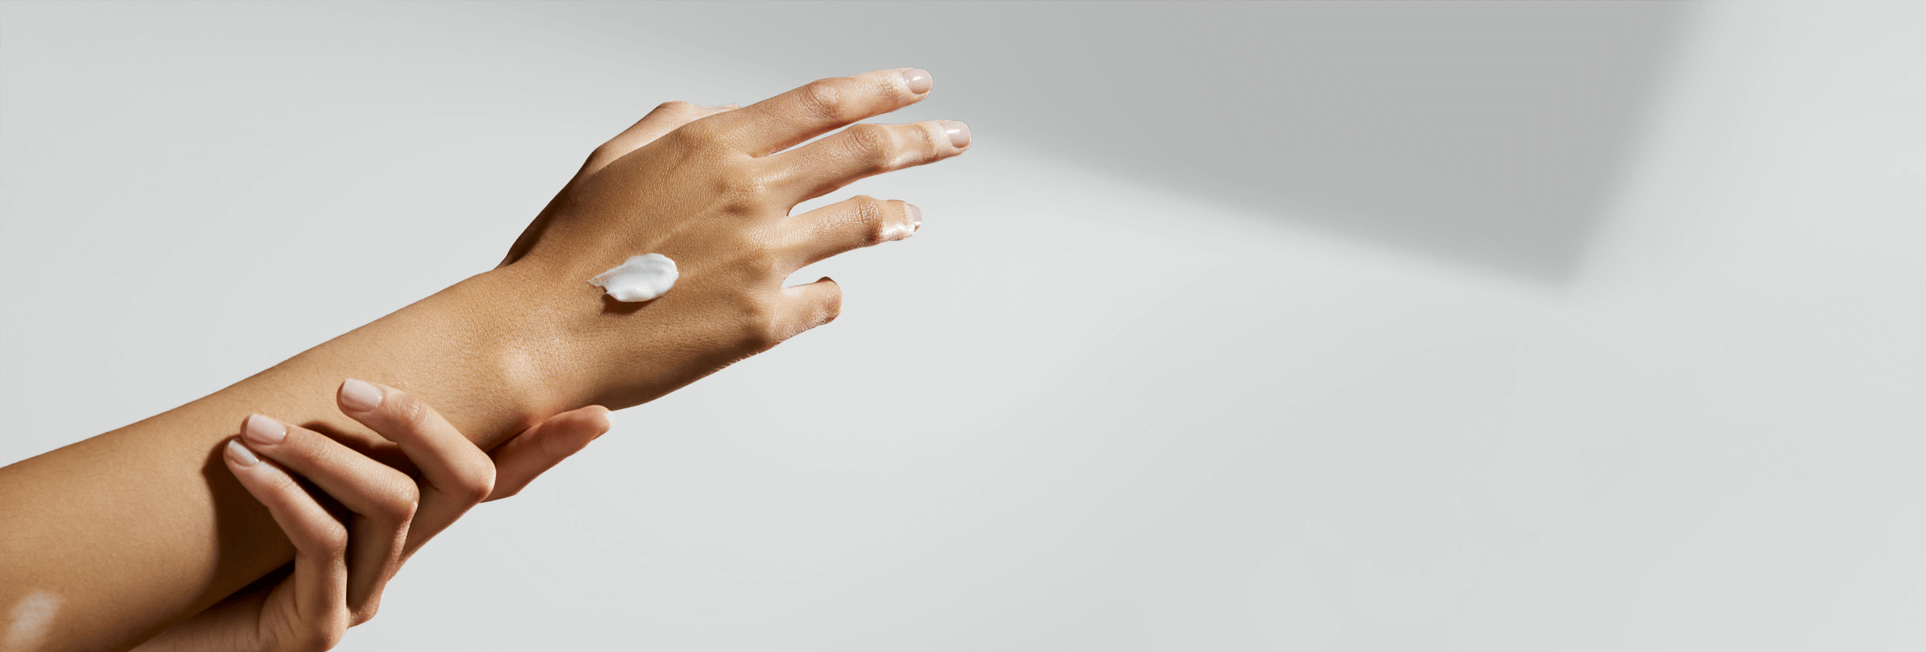 Un bras et une main s'étirent, tandis qu'on voit une touche de produit en crème sur la main.